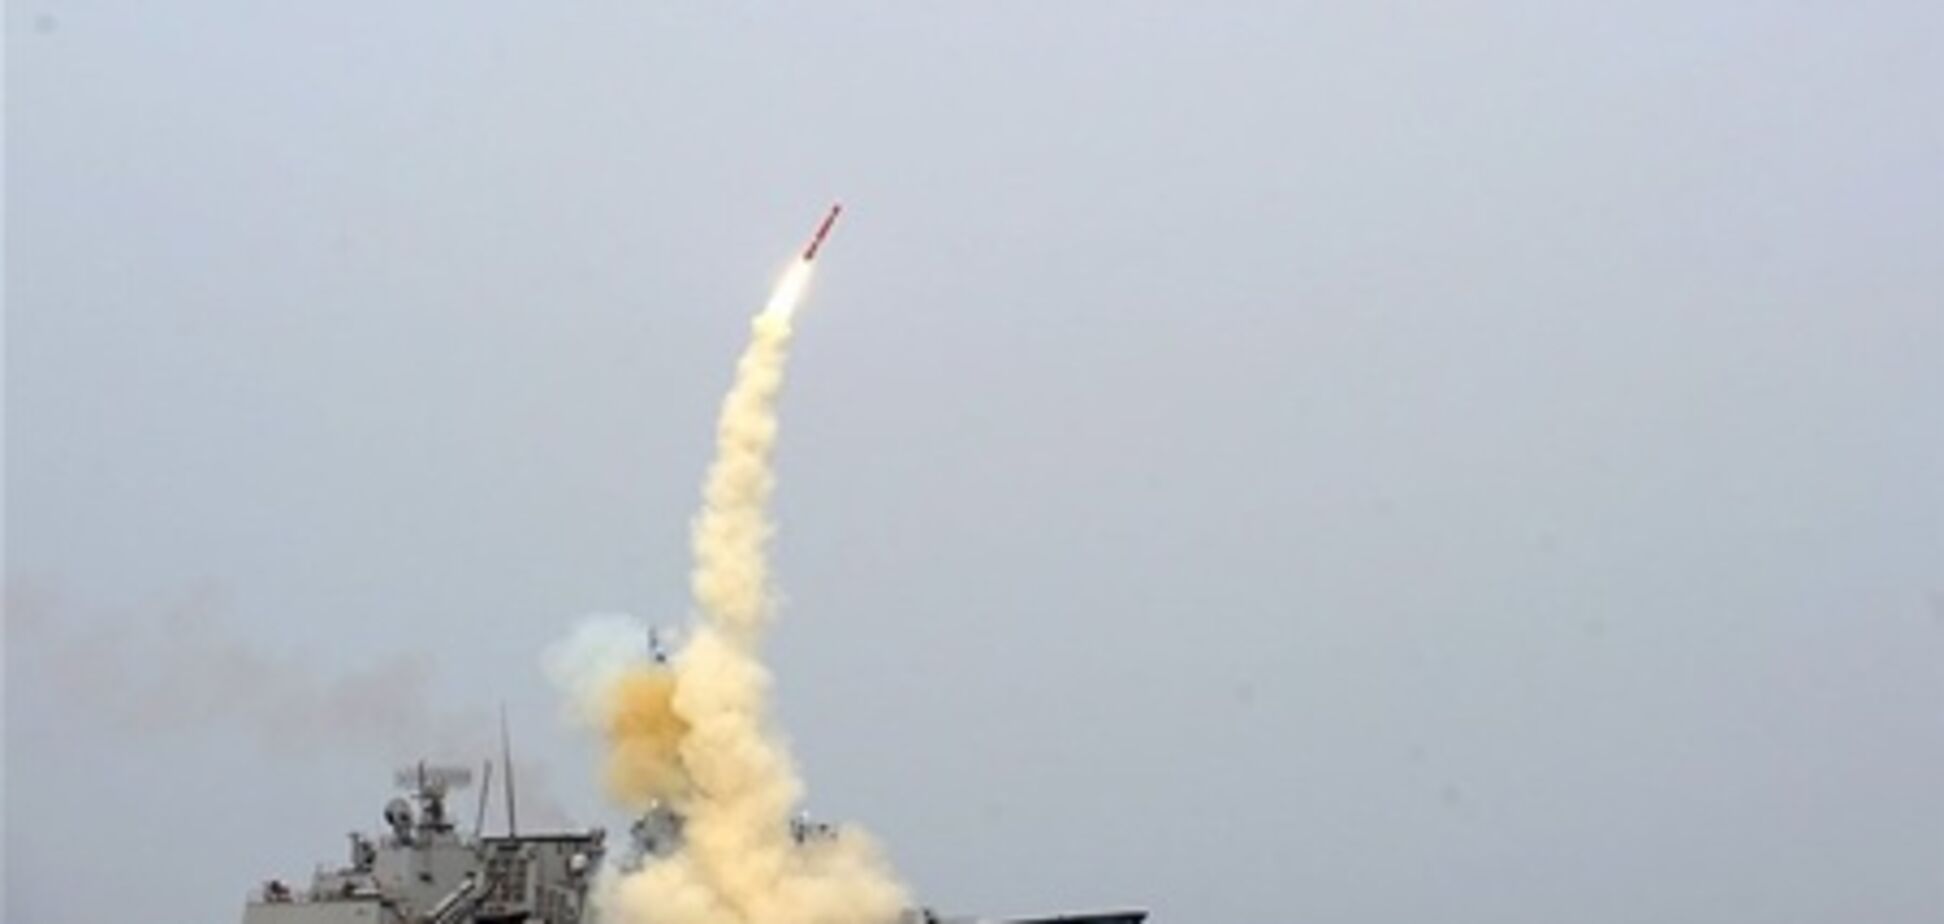 Япония в третий раз ошибочно сообщила о запуске ракеты КНДР